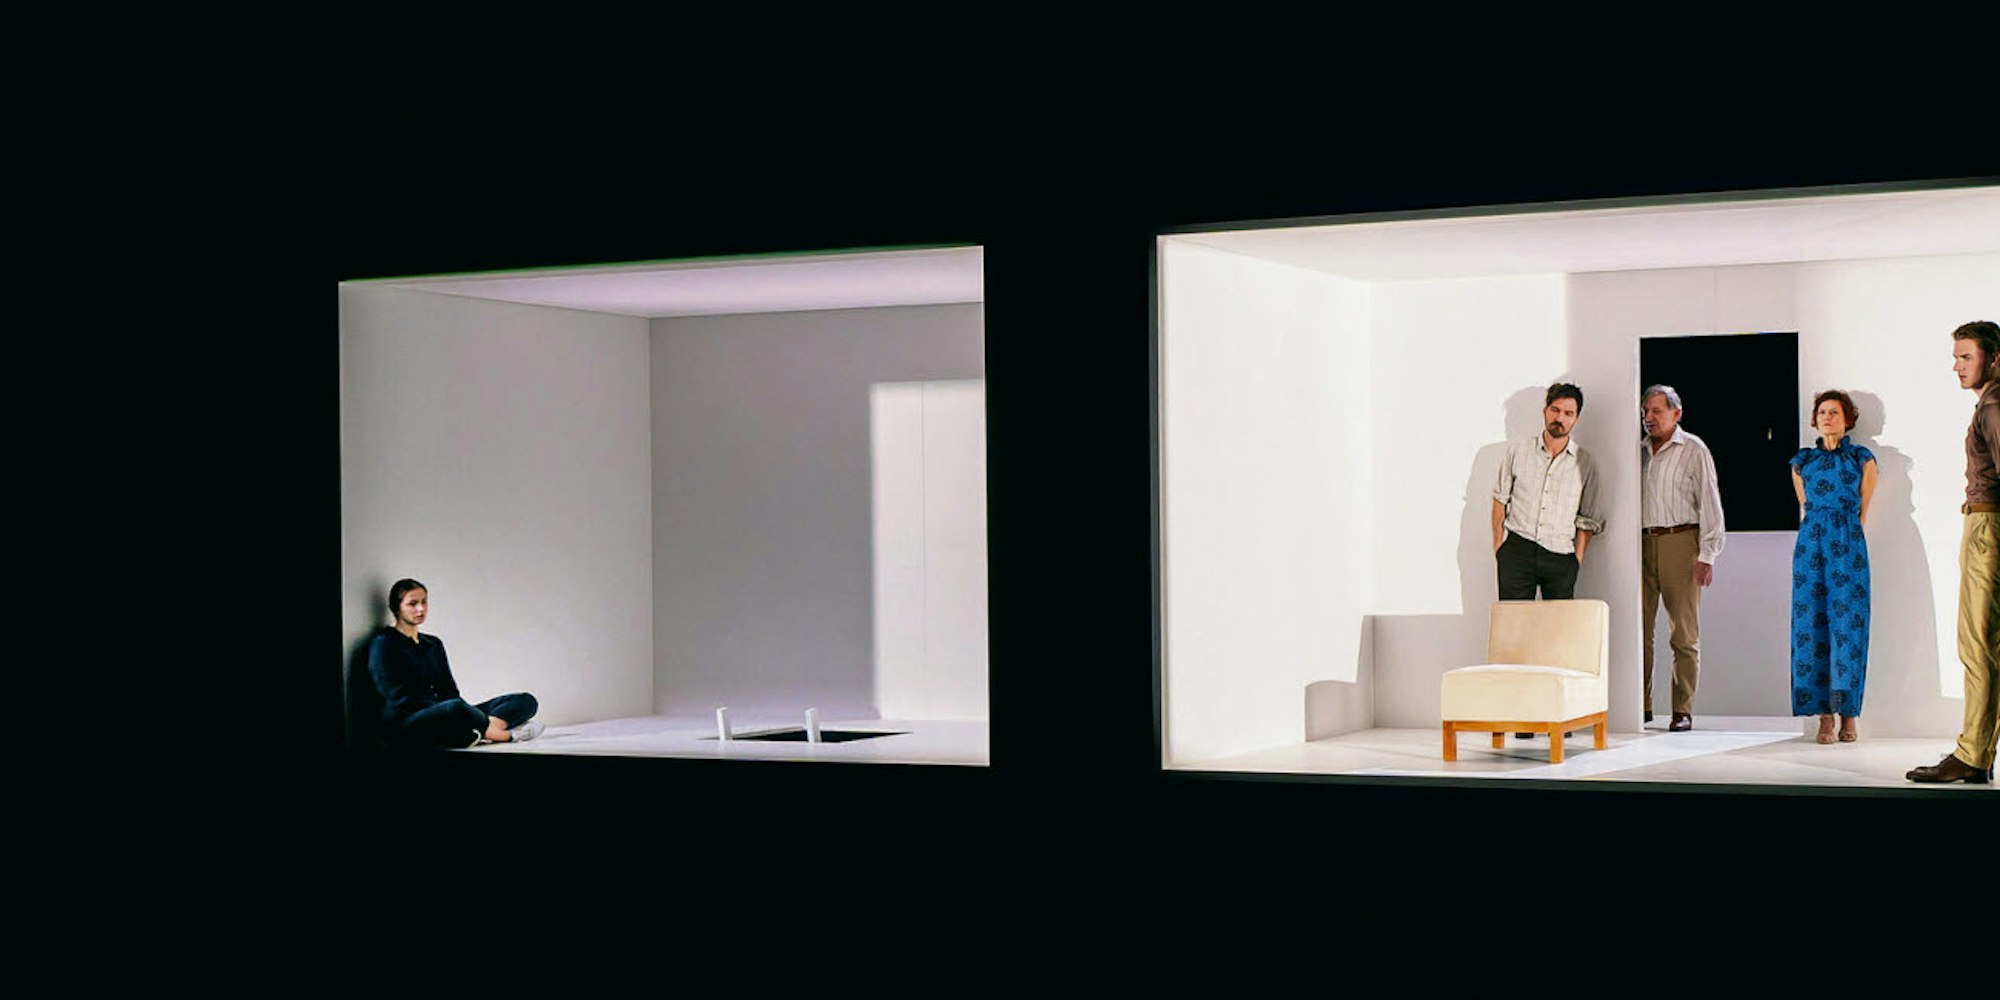 Räume wie Split-Screens im Kino – Szene aus Percevals Inszenierung